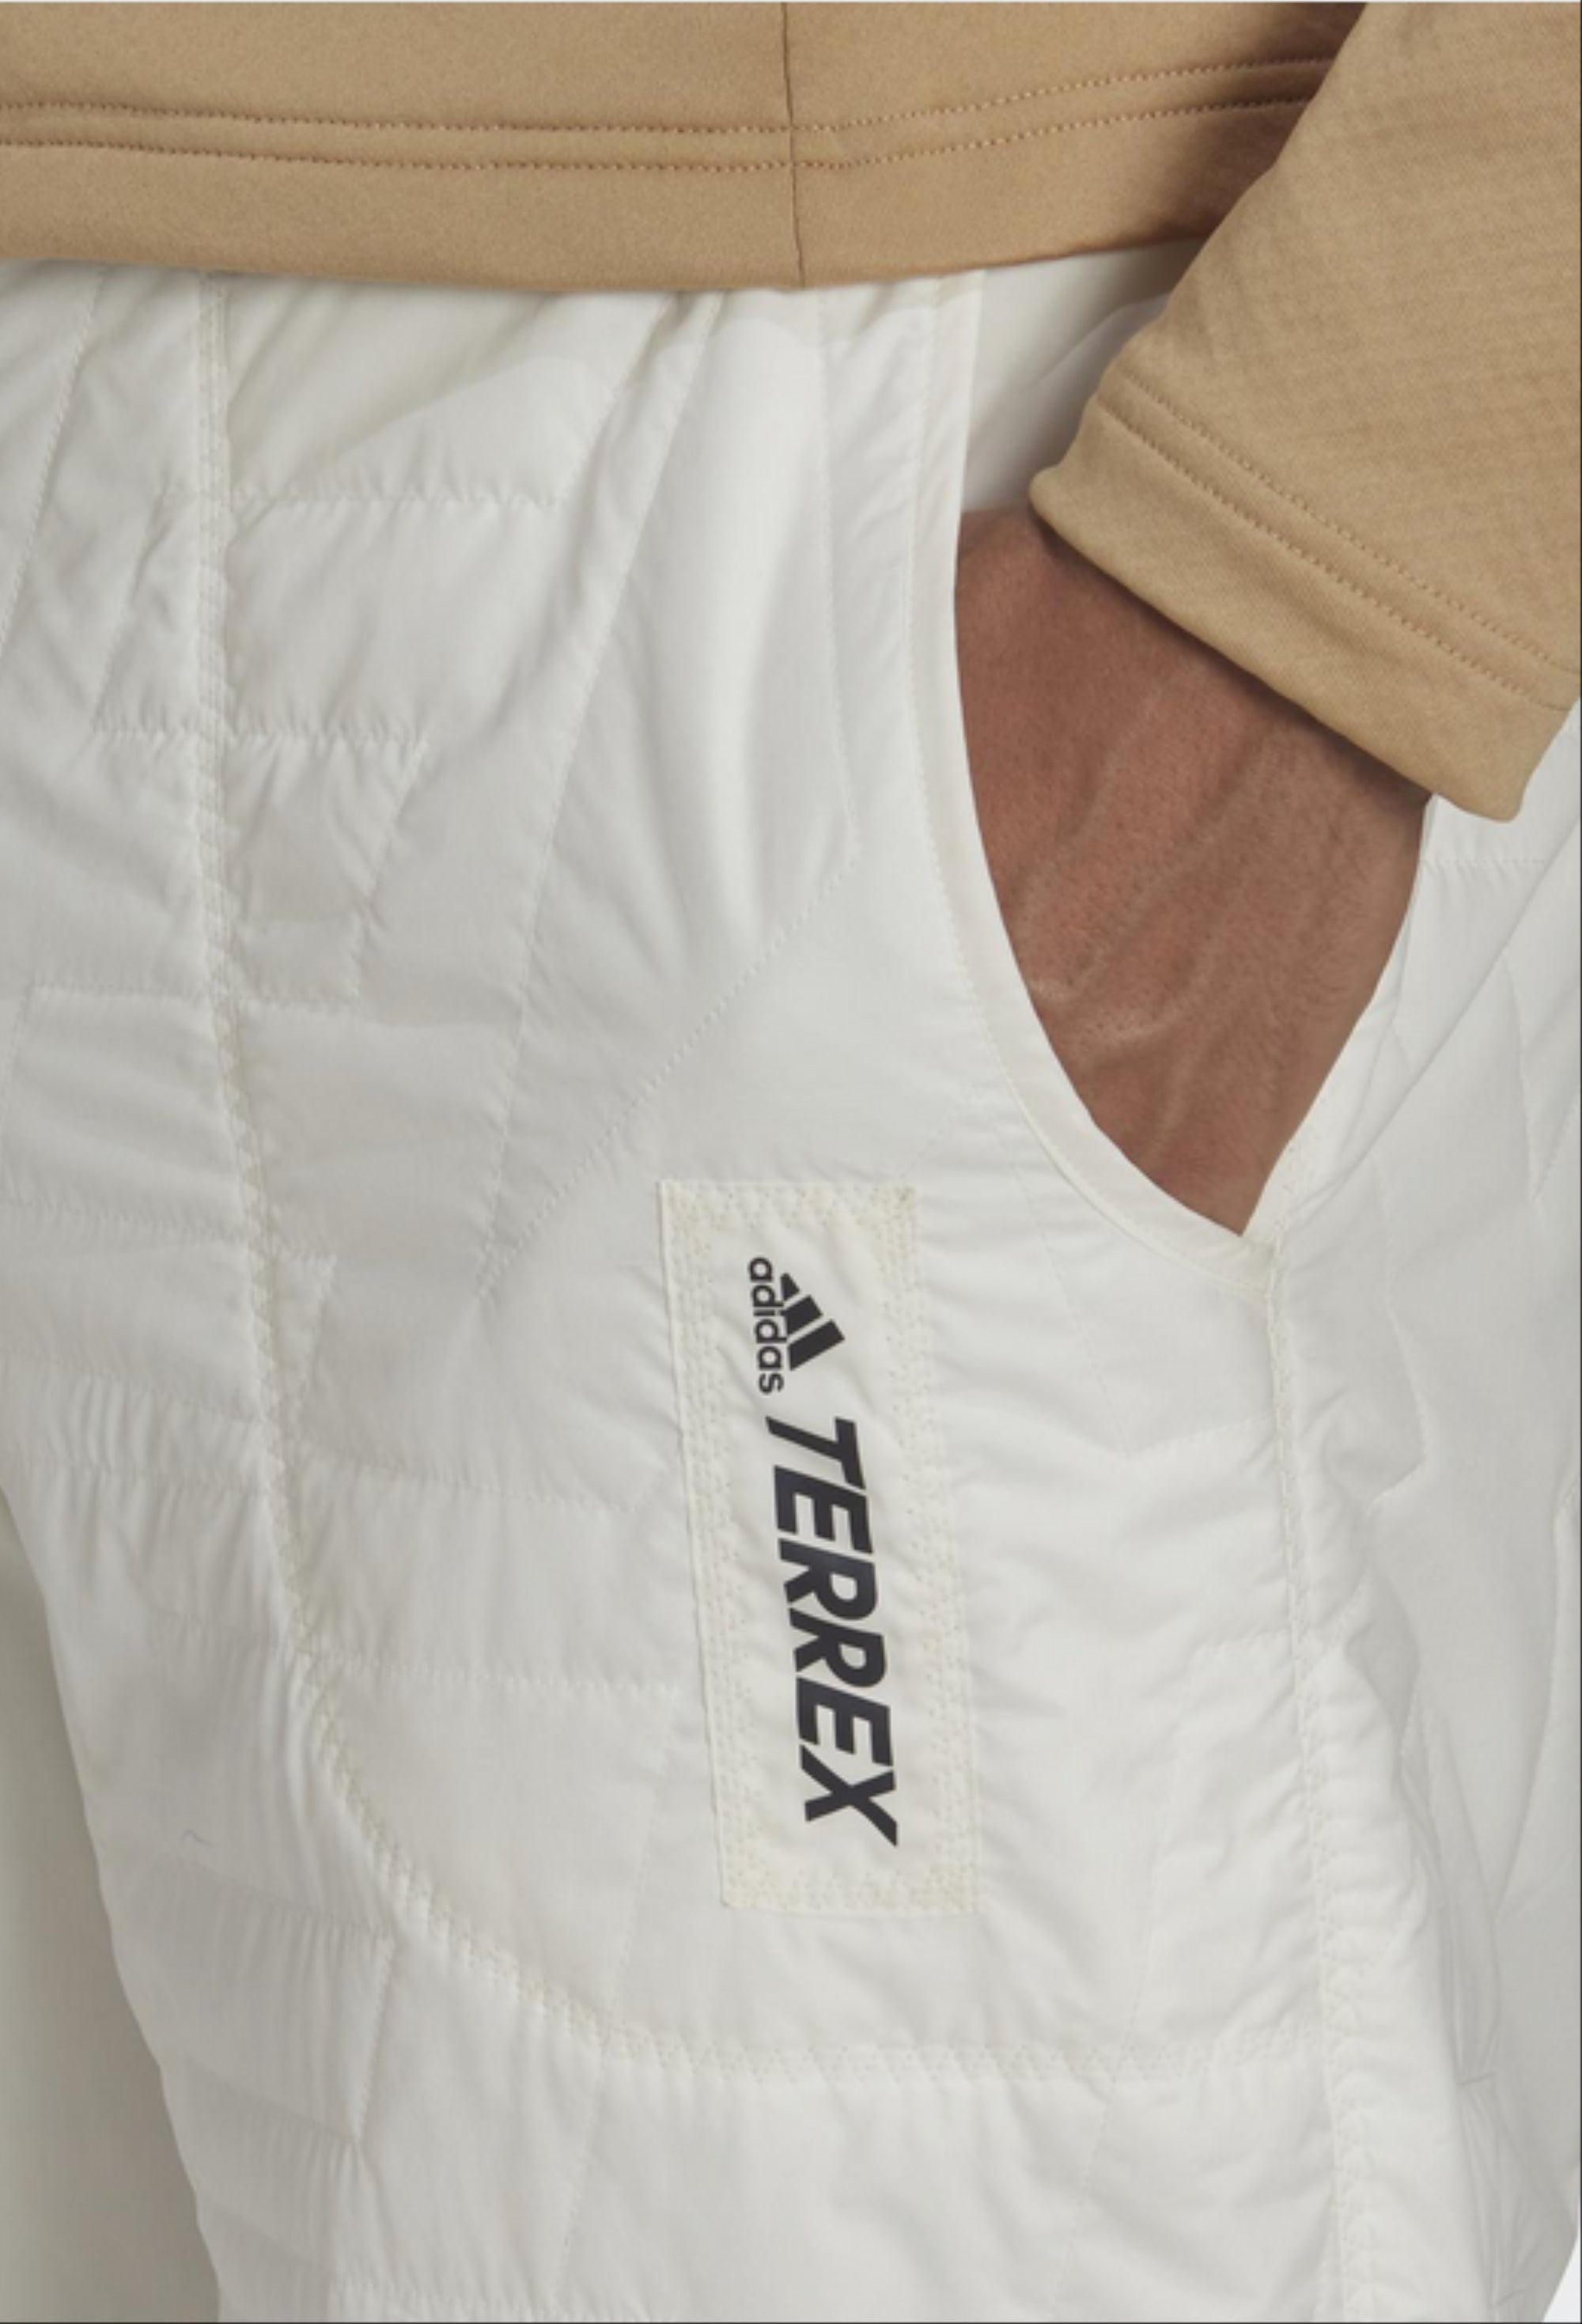 adidas Unisex Terrex Primaloft Padded Pants, Color Options – Fanletic